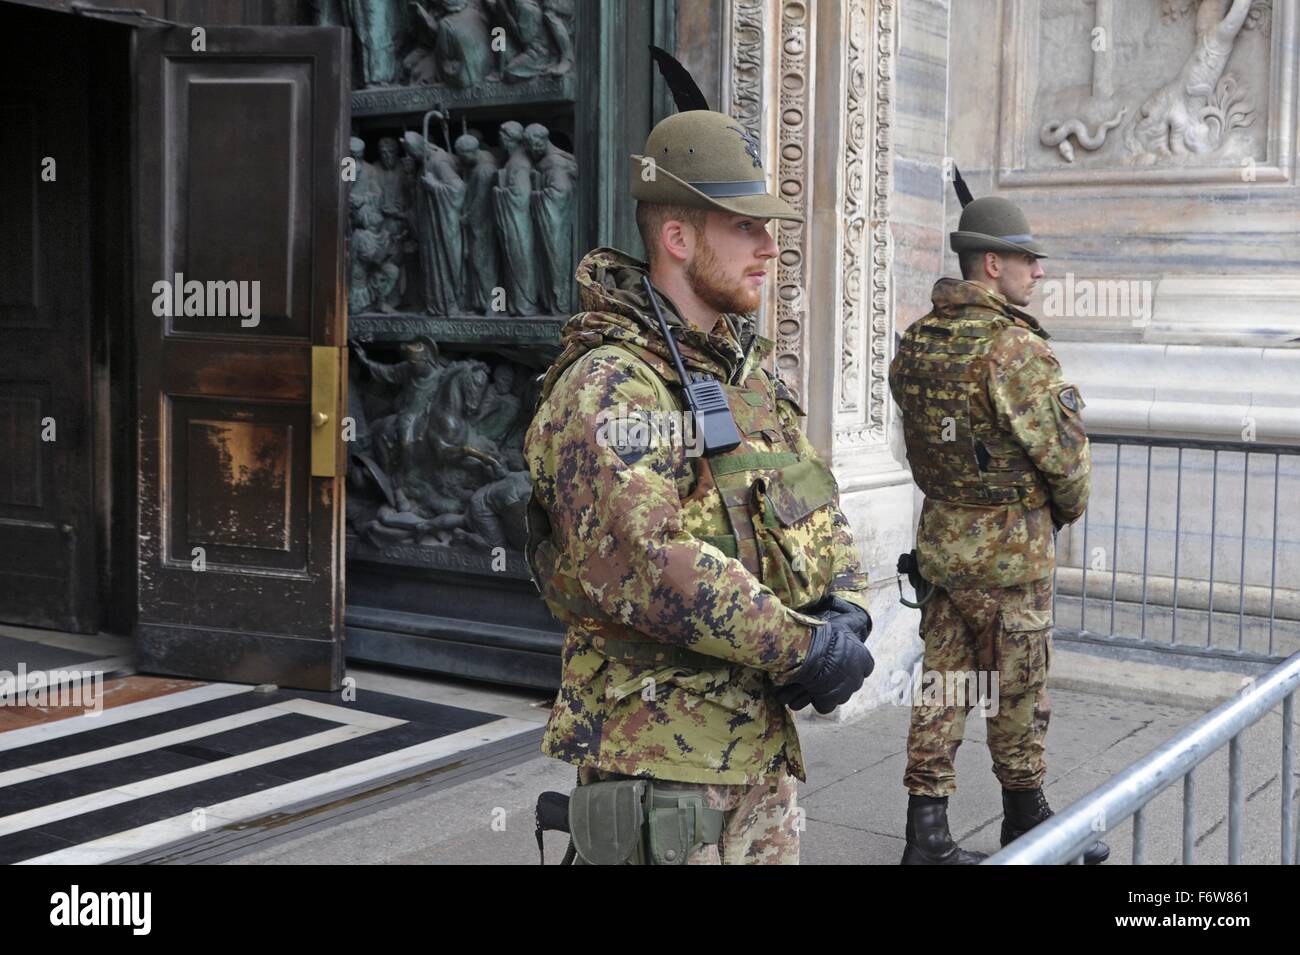 Milán, Italia. El 19 de noviembre de 2015. El ejército en la lucha contra el terrorismo del servicio de seguridad alrededor de la catedral Duomo. Crédito: Dino Fracchia/Alamy Live News Foto de stock